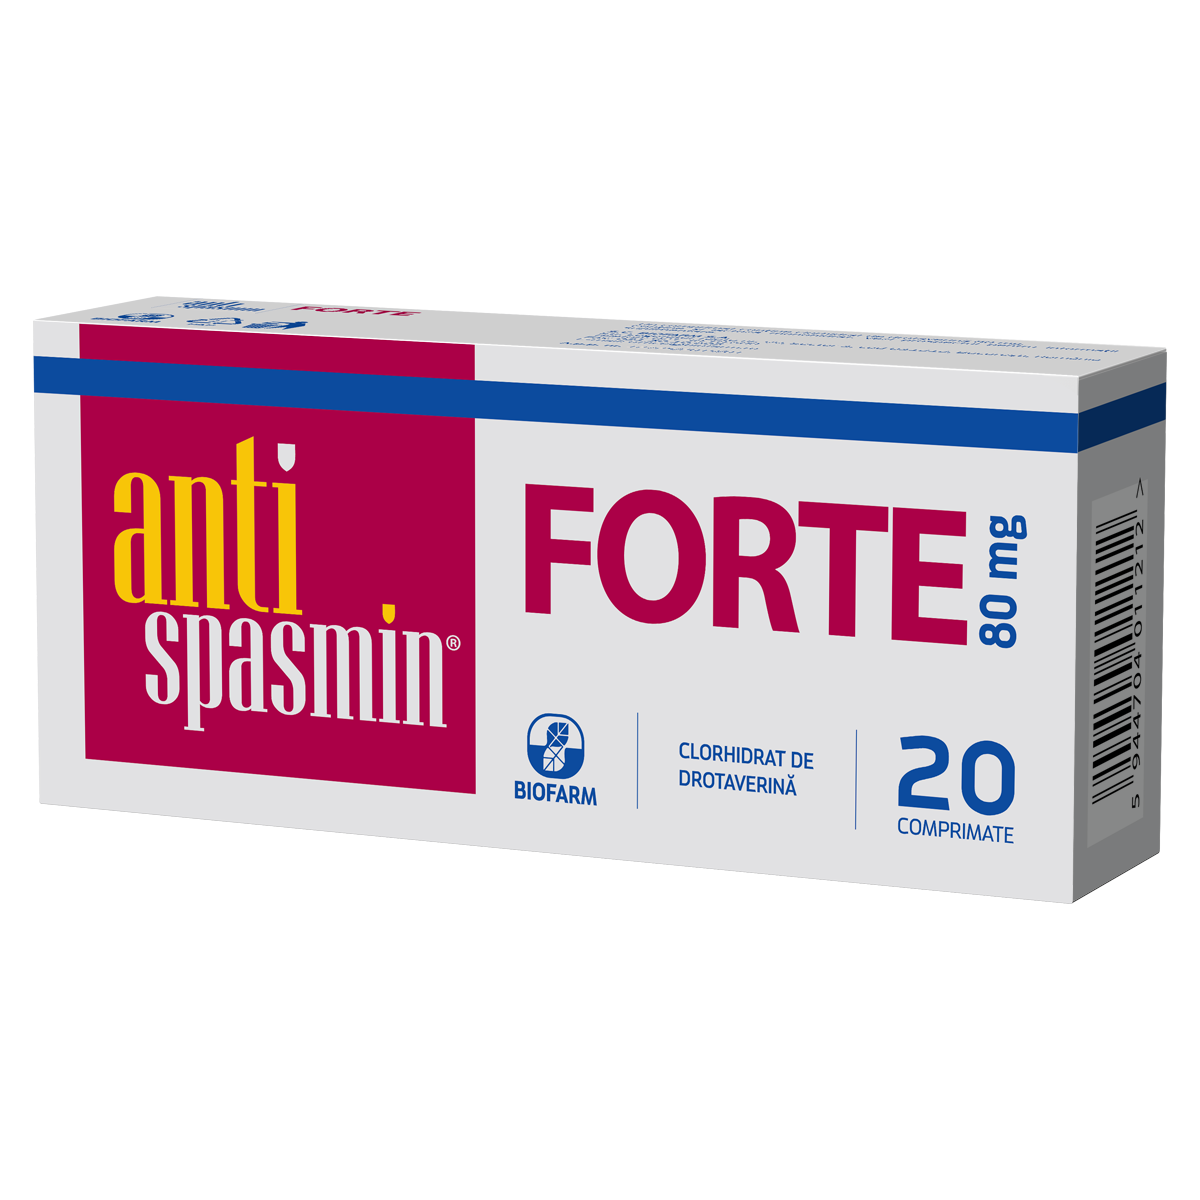 Antispastice - Antispasmin Forte, 20 comprimate, Biofarm, sinapis.ro